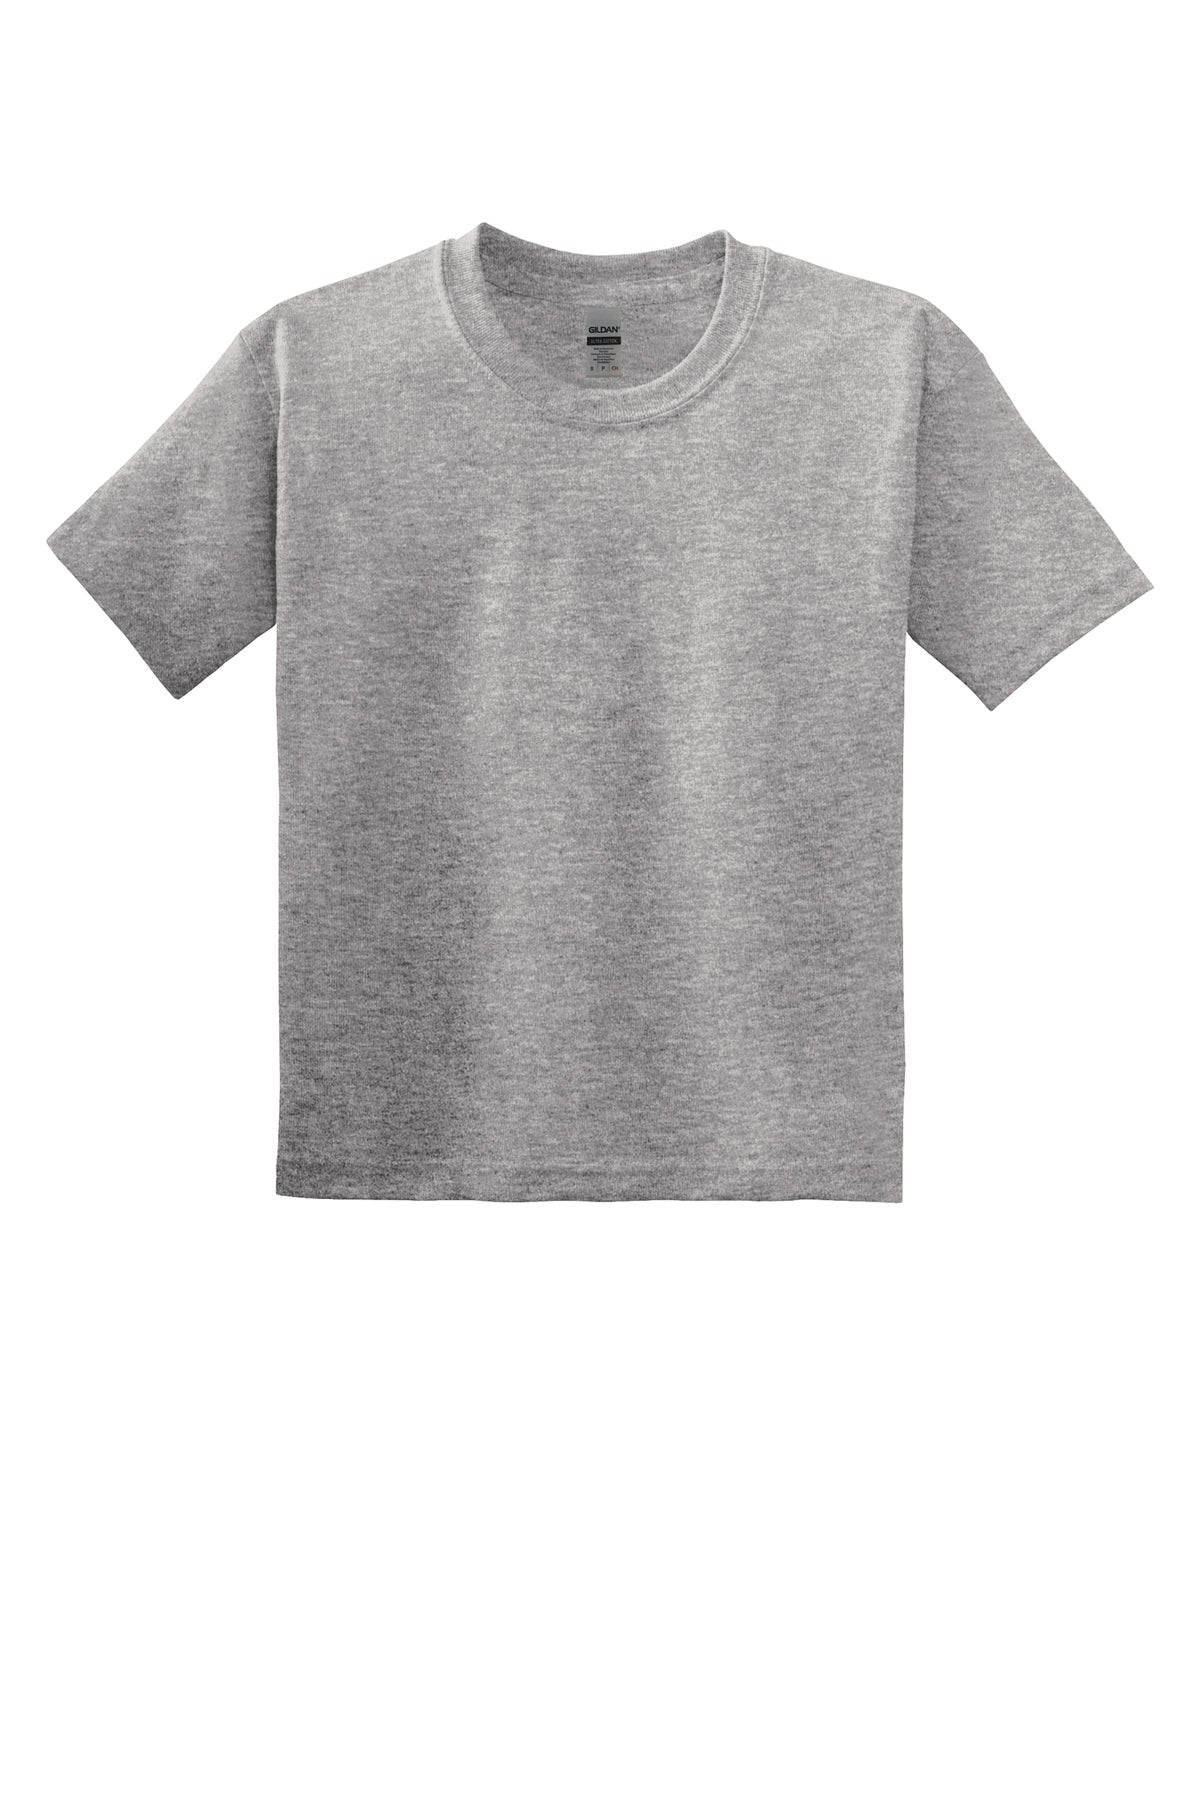 8000B Gildan® - Youth DryBlend® 50 Cotton/50 Poly T-Shirt. XS-XL